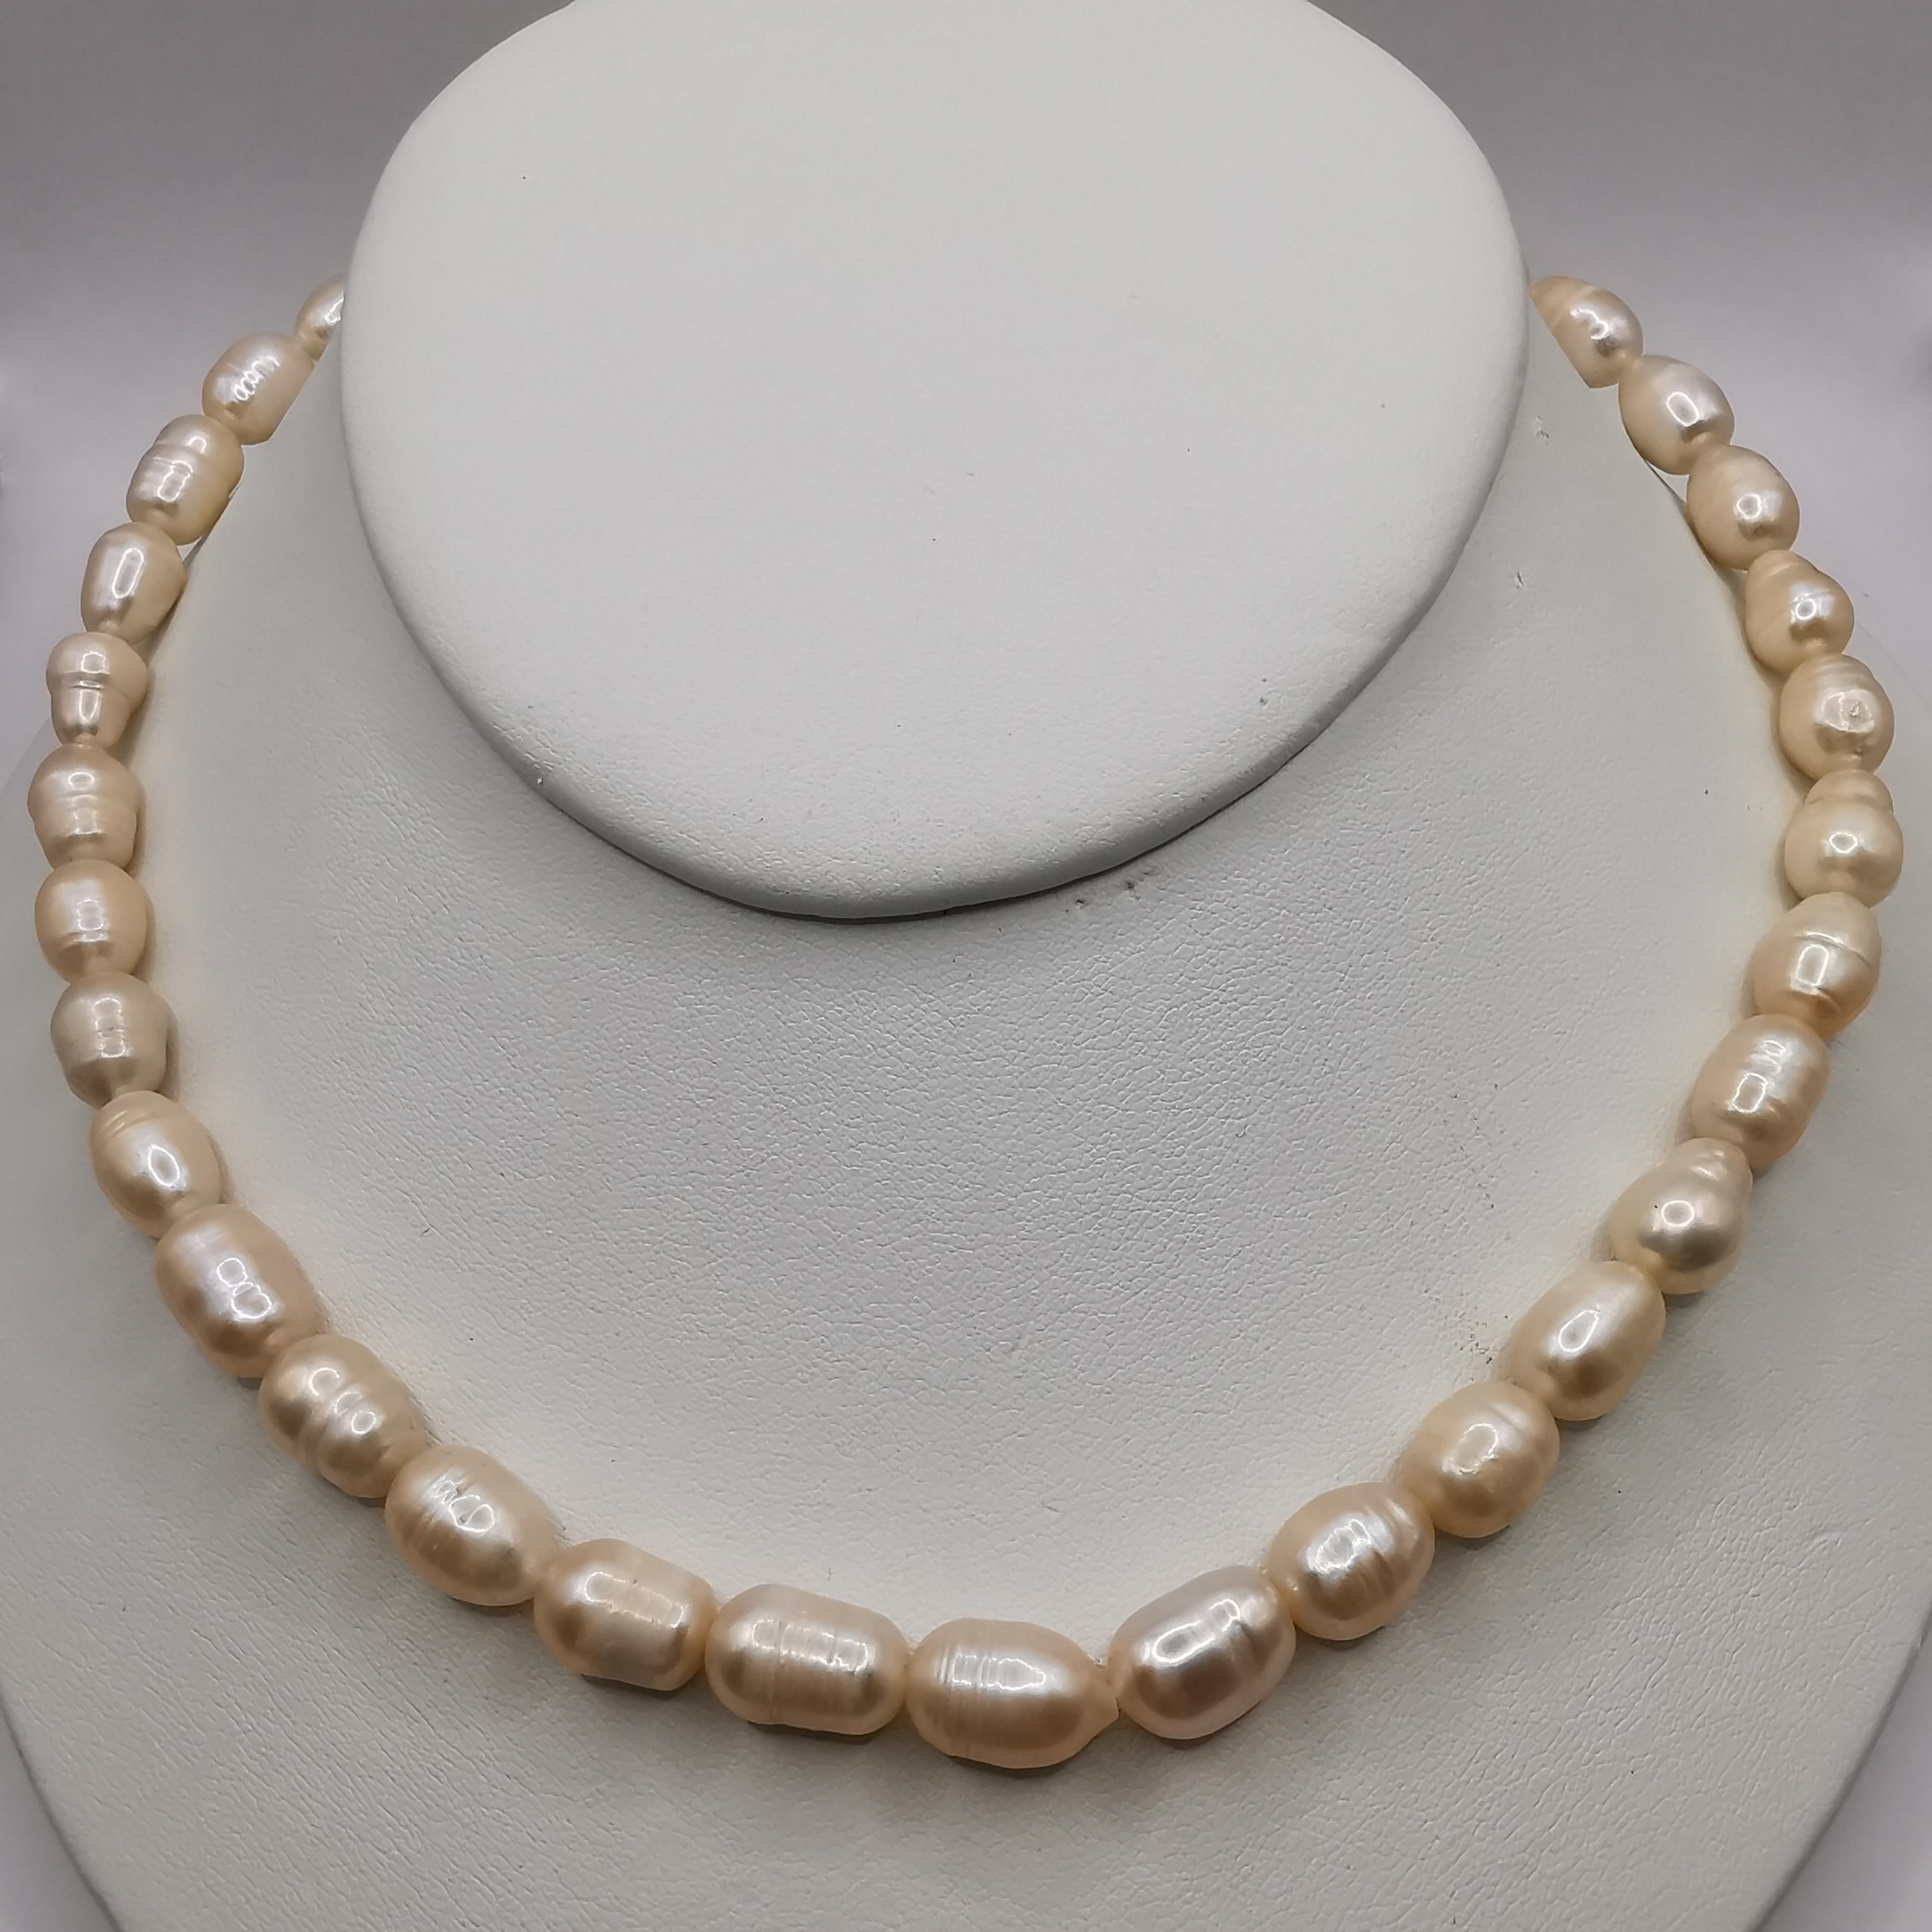 Ce magnifique collier de perles baroques de culture d'eau douce est un accessoire parfait pour toute occasion. Le collier est composé d'un rang de 36 perles de culture d'eau douce d'un blanc classique, qui s'harmonise avec toutes les tenues. La